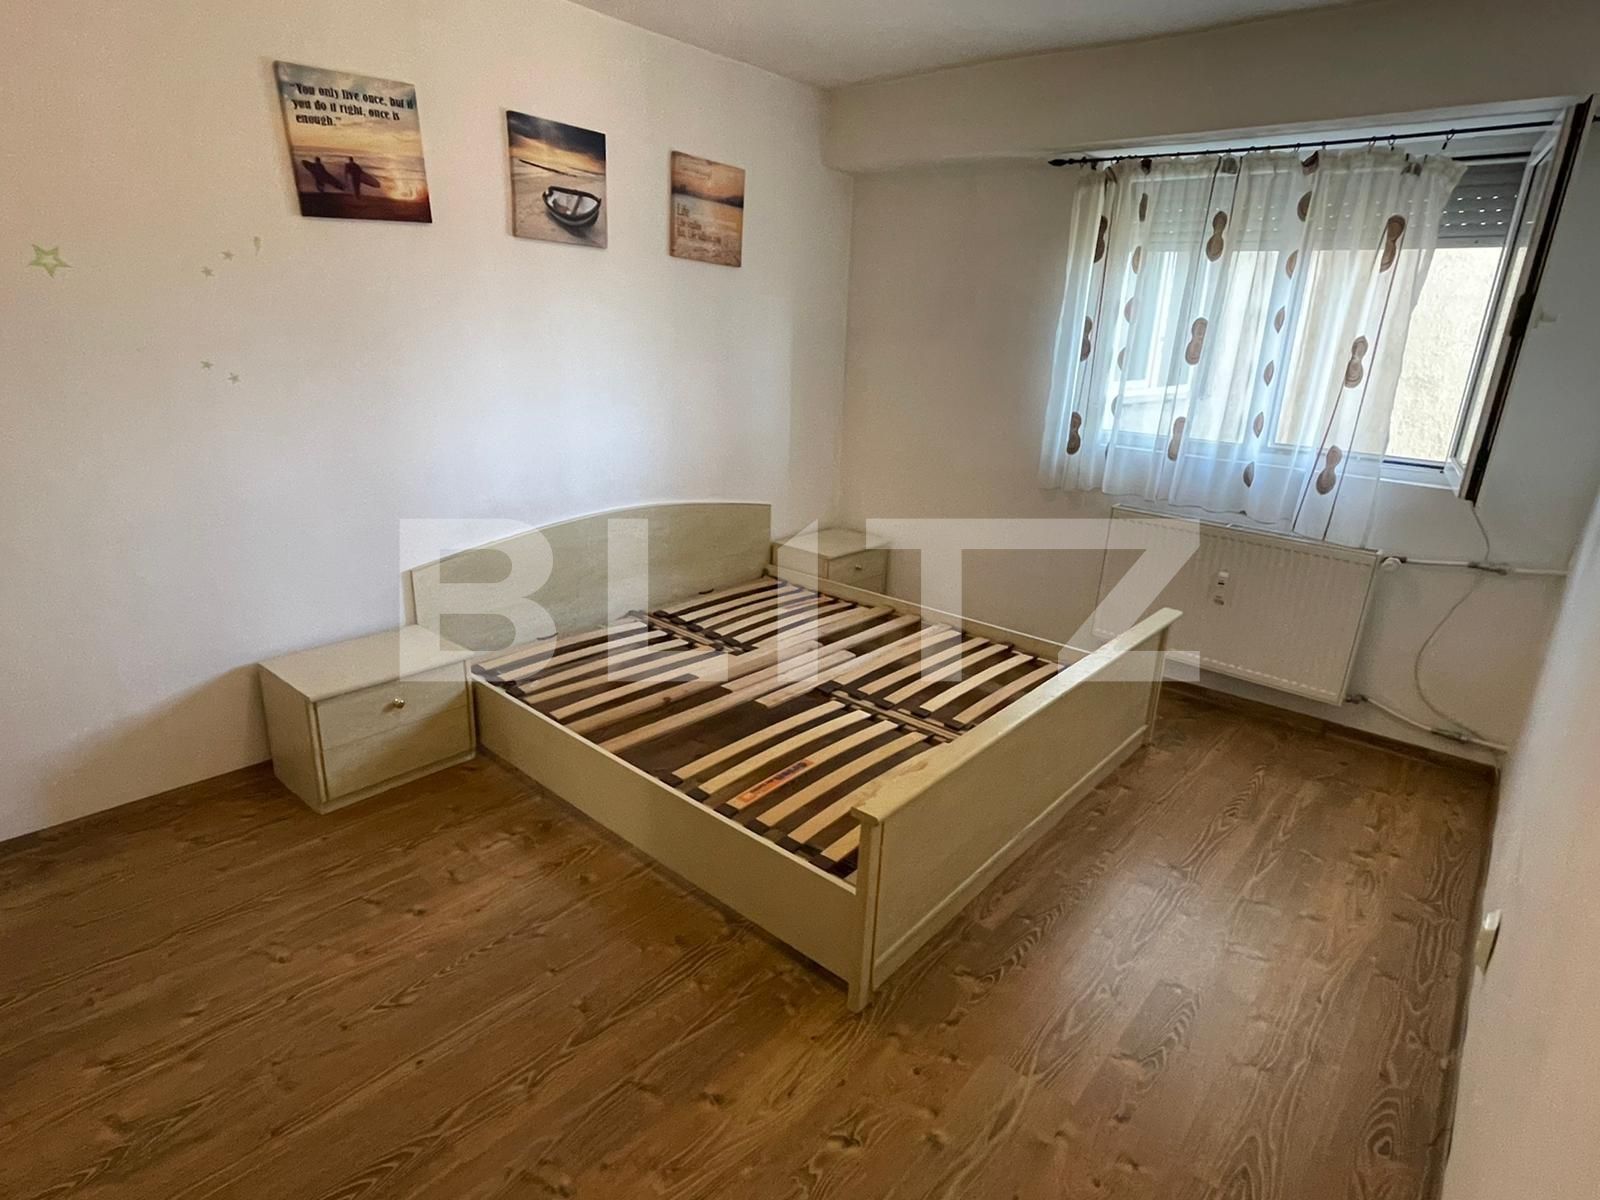 Apartament AN, 2 camere, decomandat, 60 mp, zona Dacia